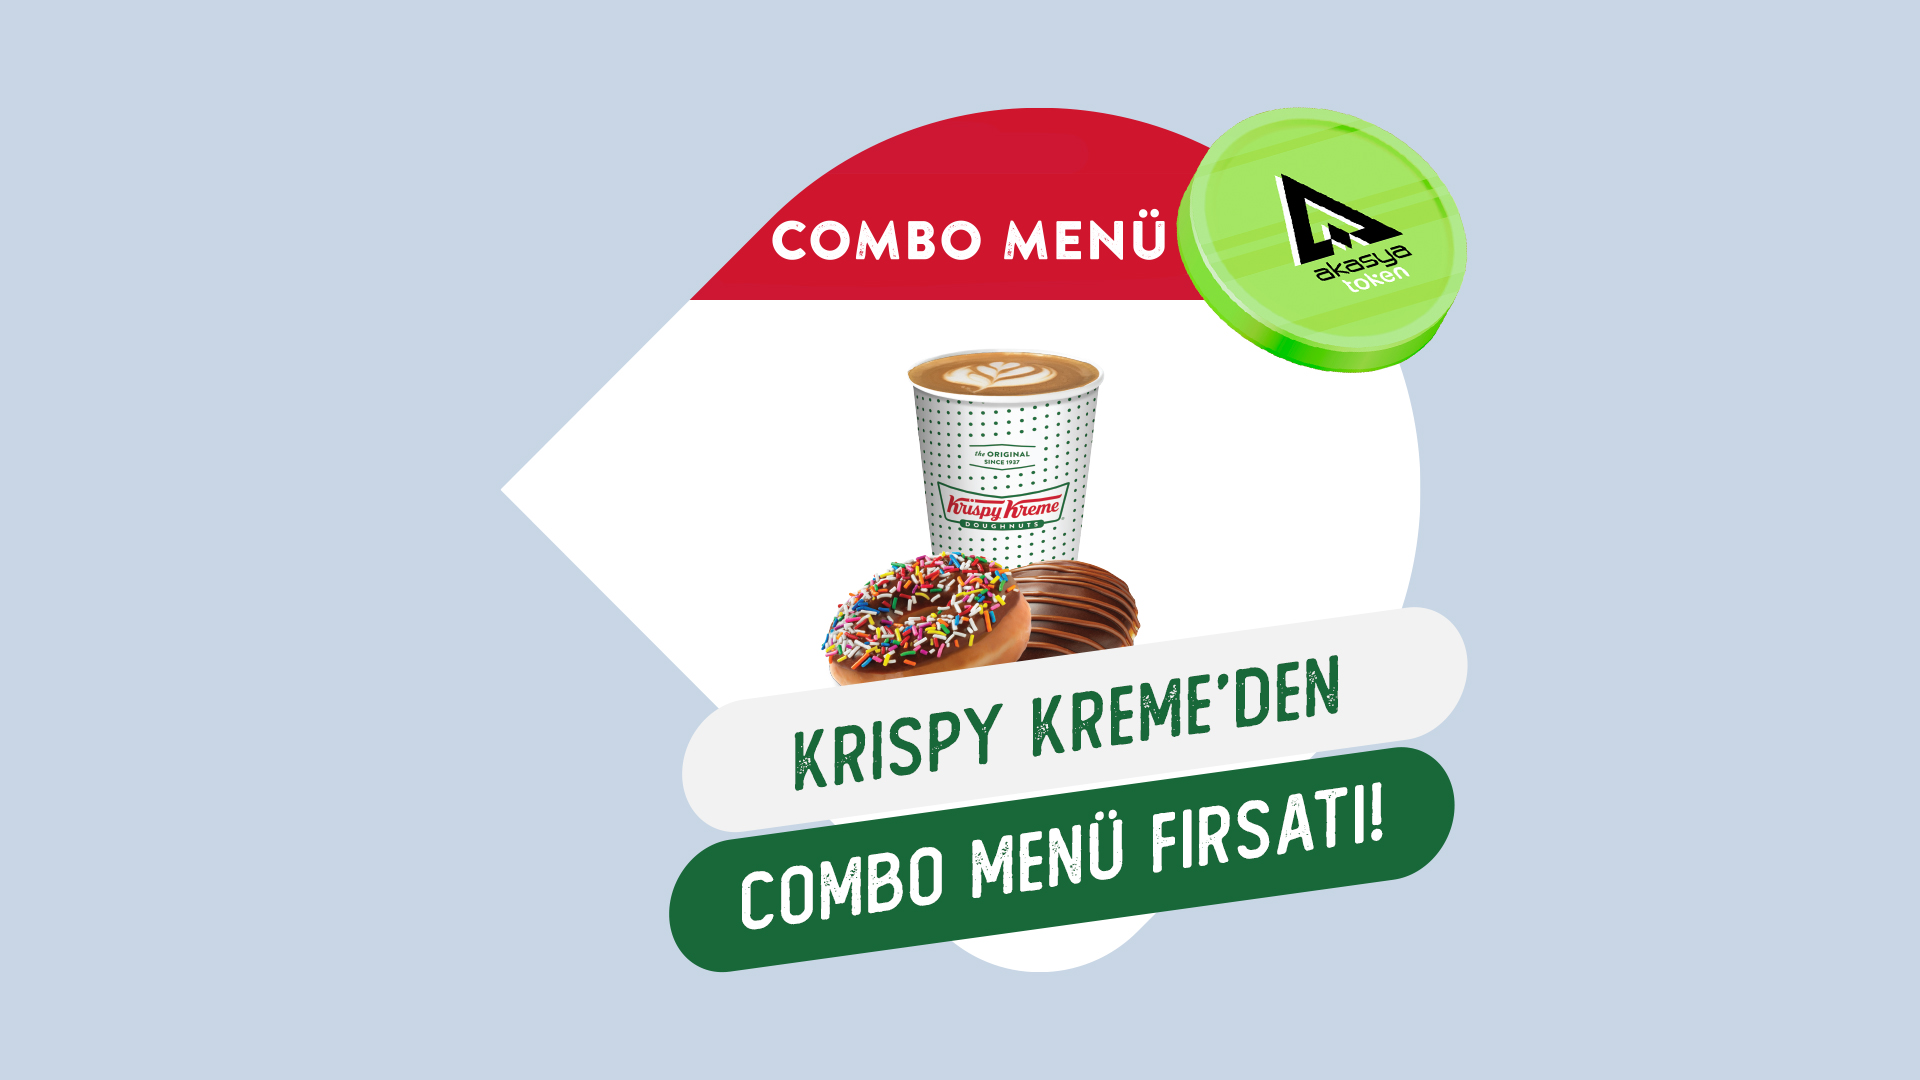 AKSY Token'a Özel Krispy Creme’den Combo Menü fırsatı! 